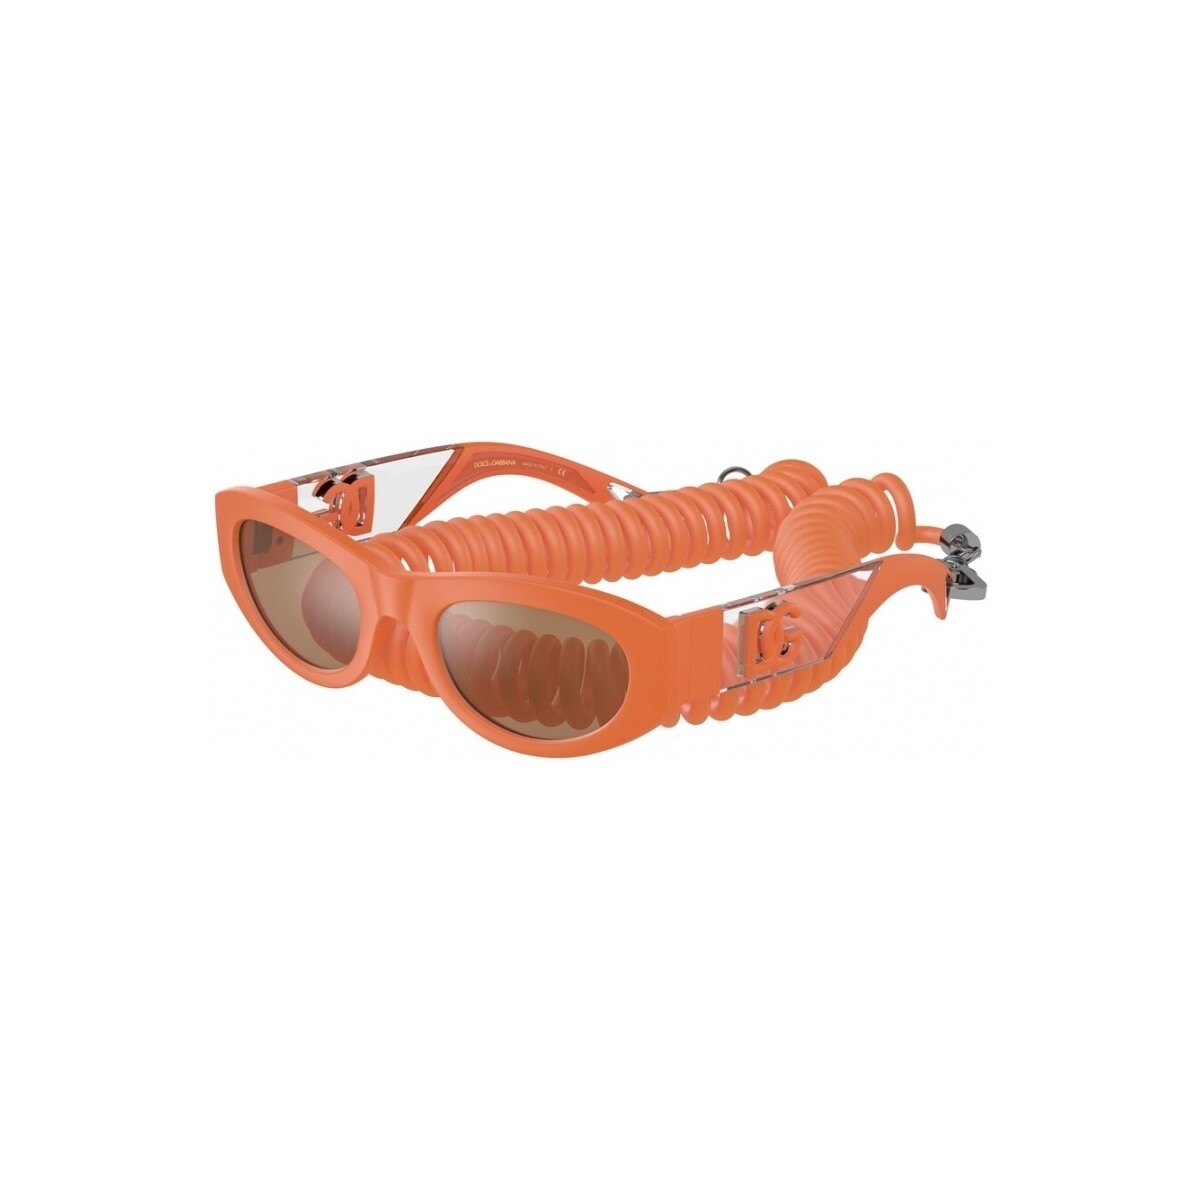 Orologi & Gioielli Uomo Occhiali da sole D&G DG6174 Occhiali da sole, Arancione/Arancione, 54 mm Altri